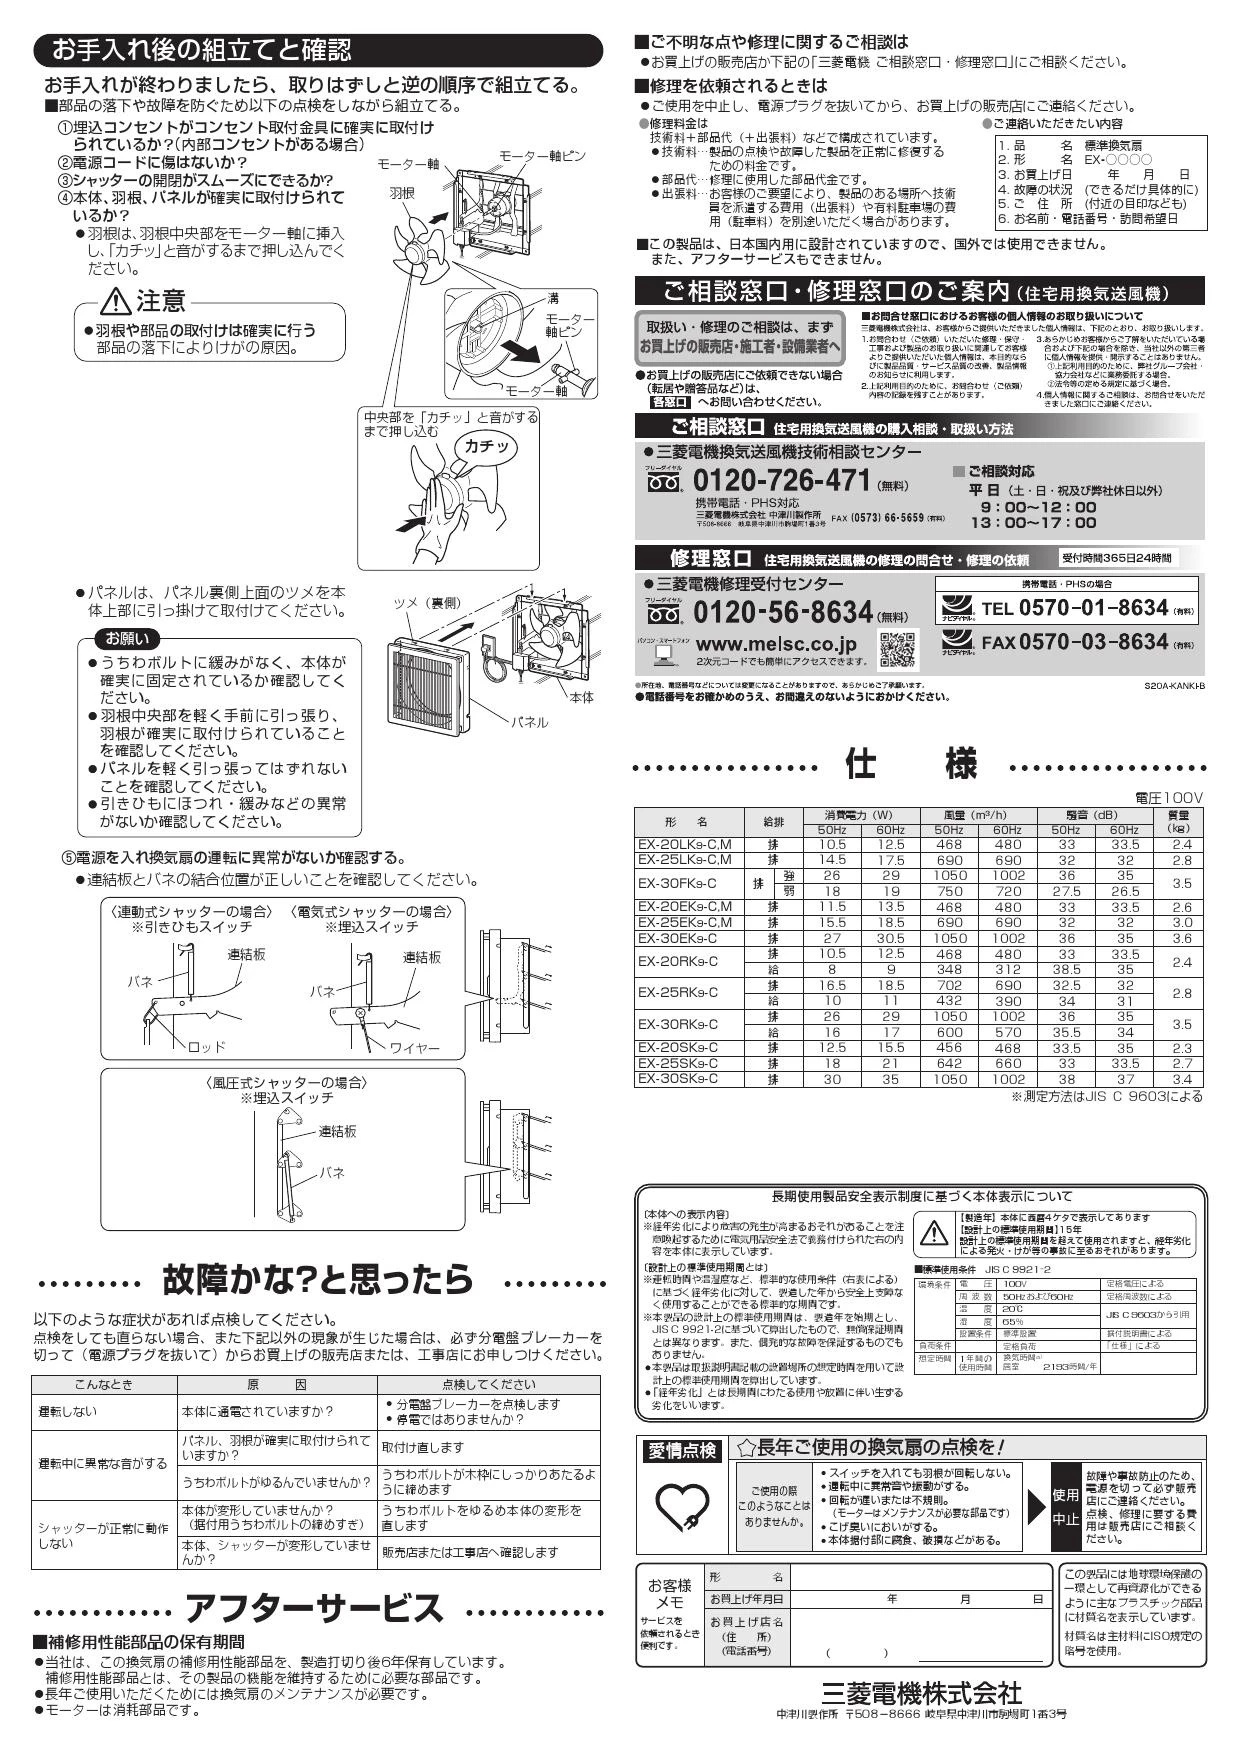 三菱電機 EX-20RK9-C 取扱説明書 施工説明書 納入仕様図|三菱電機 居間 